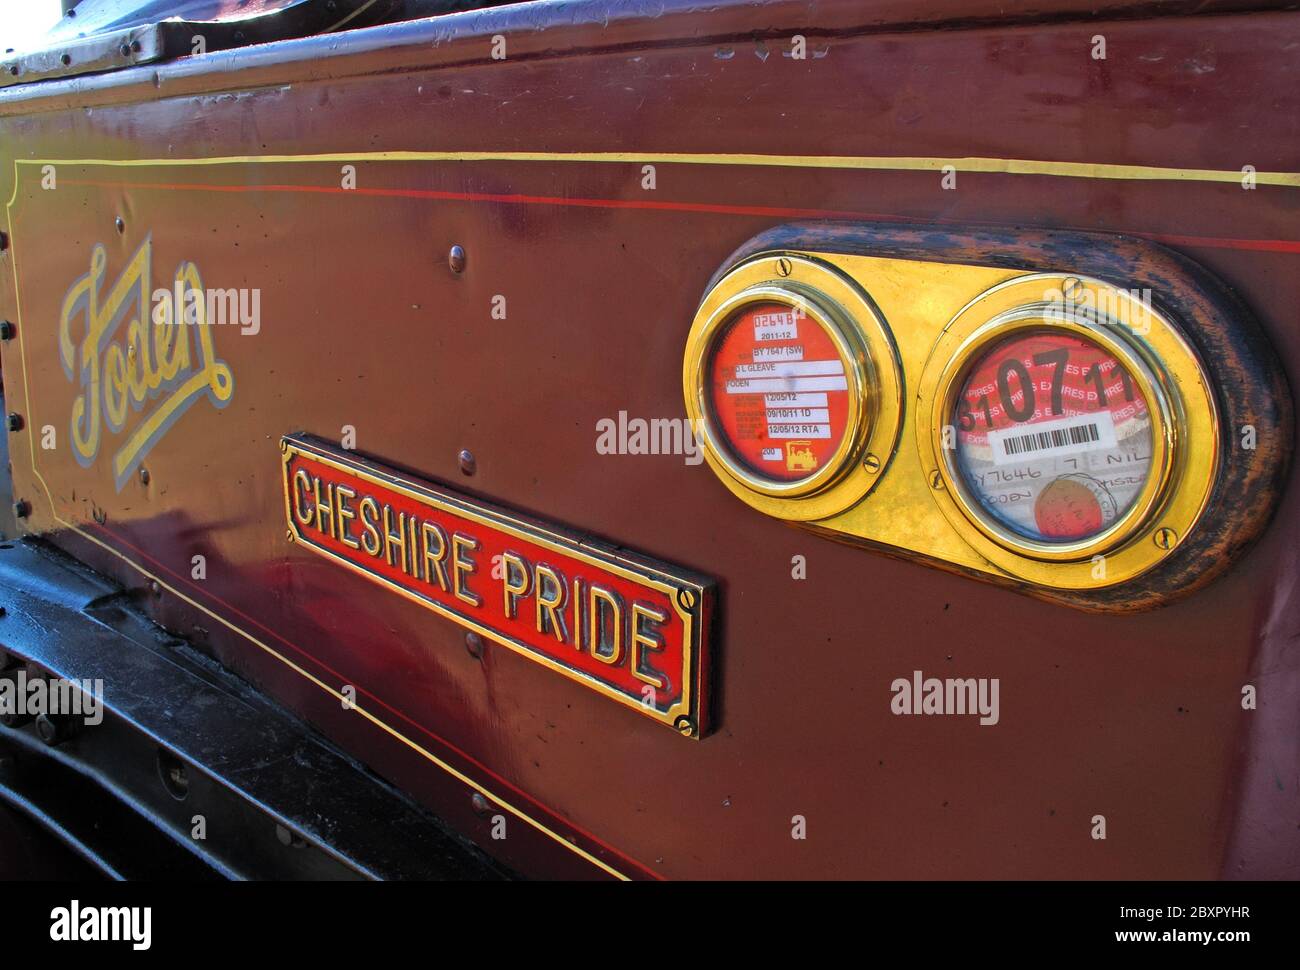 Foden Cheshire Pride, BY7646, moteur à vapeur showmans, Daresbury, été, juillet 2011, Cheshire, Angleterre, Royaume-Uni Banque D'Images